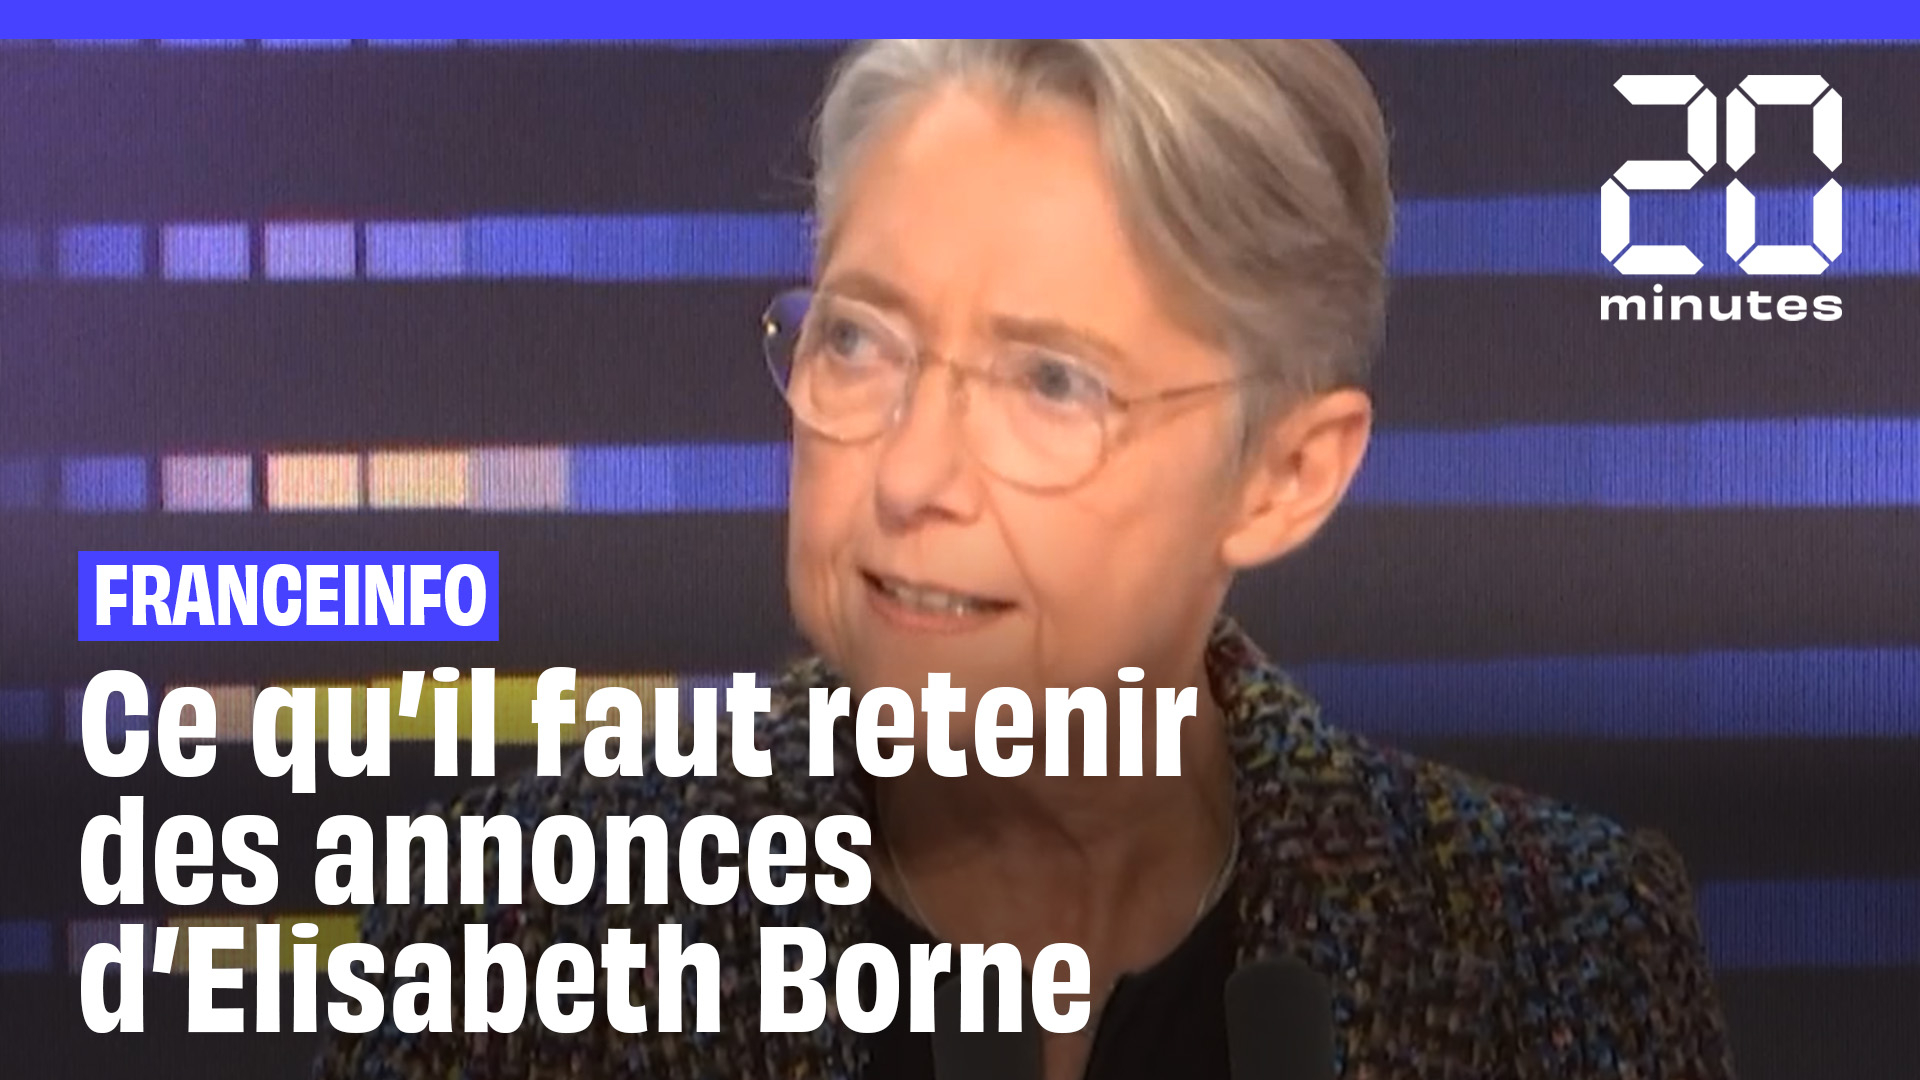 Retraite, assurance chômage, inflation... ce qu'il faut retenir des annonces d'Élisabeth Borne sur Franceinfo (20 Minutes)